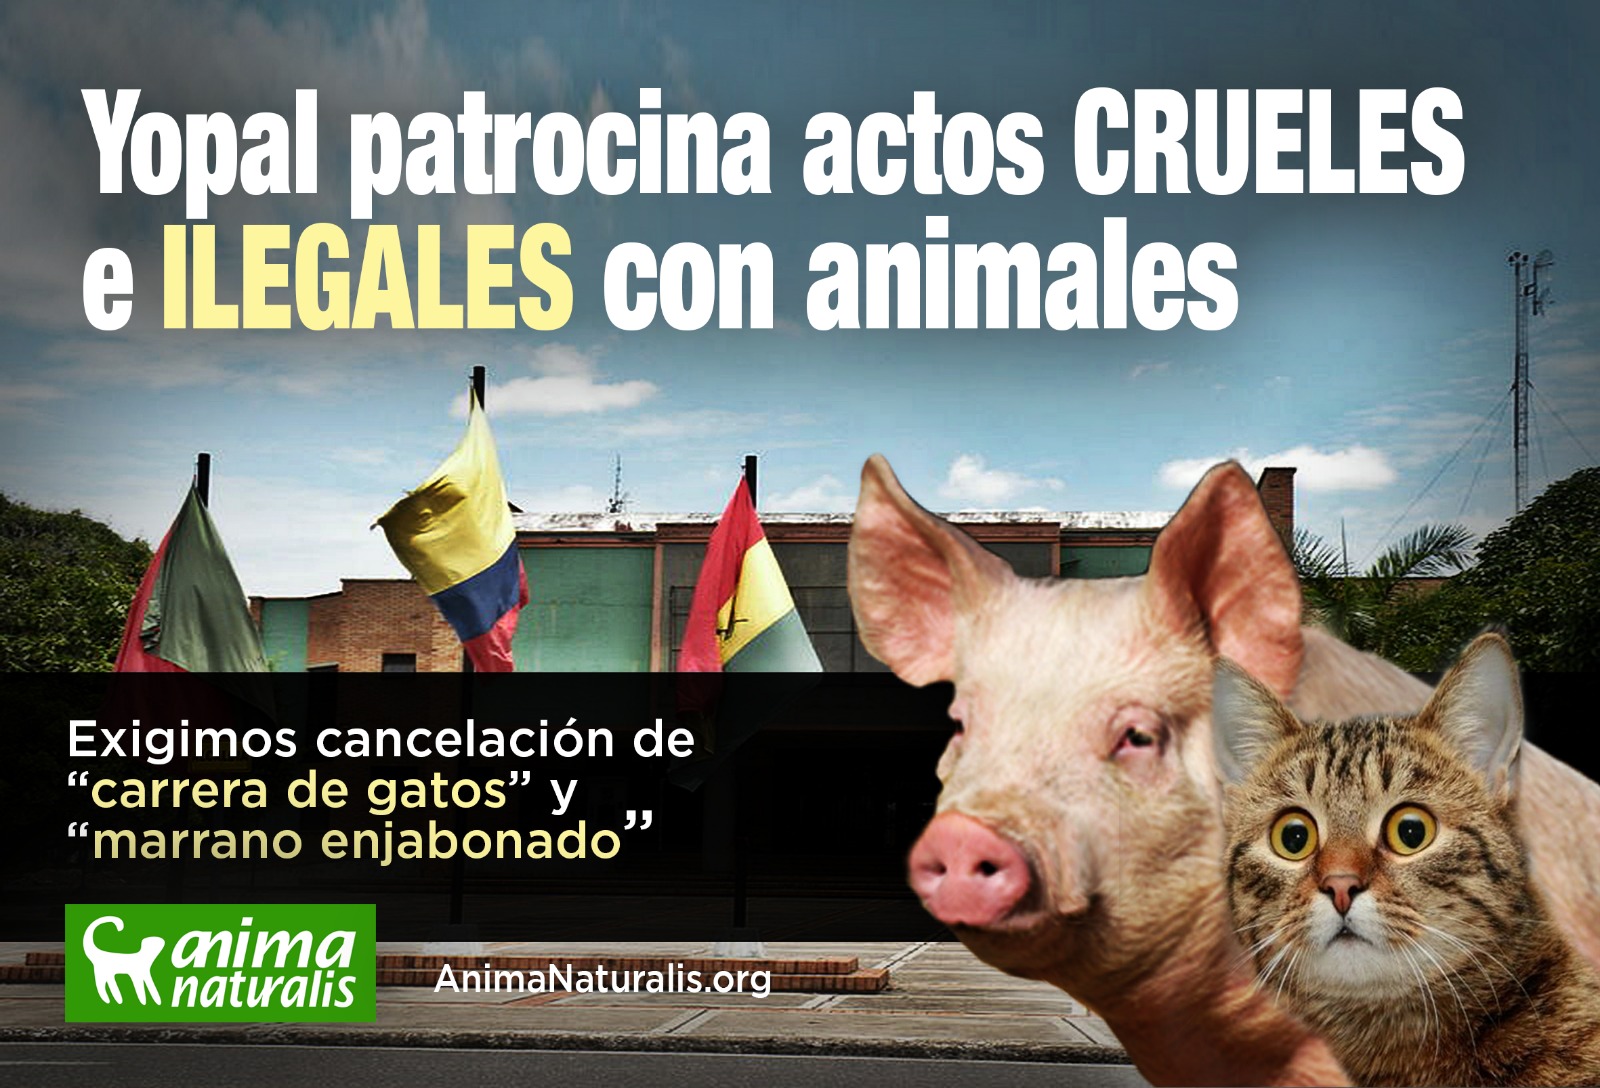 ¡Actúa ya! La alcaldía de Yopal tiene previsto realizar dos actividades crueles e ilegales con animales